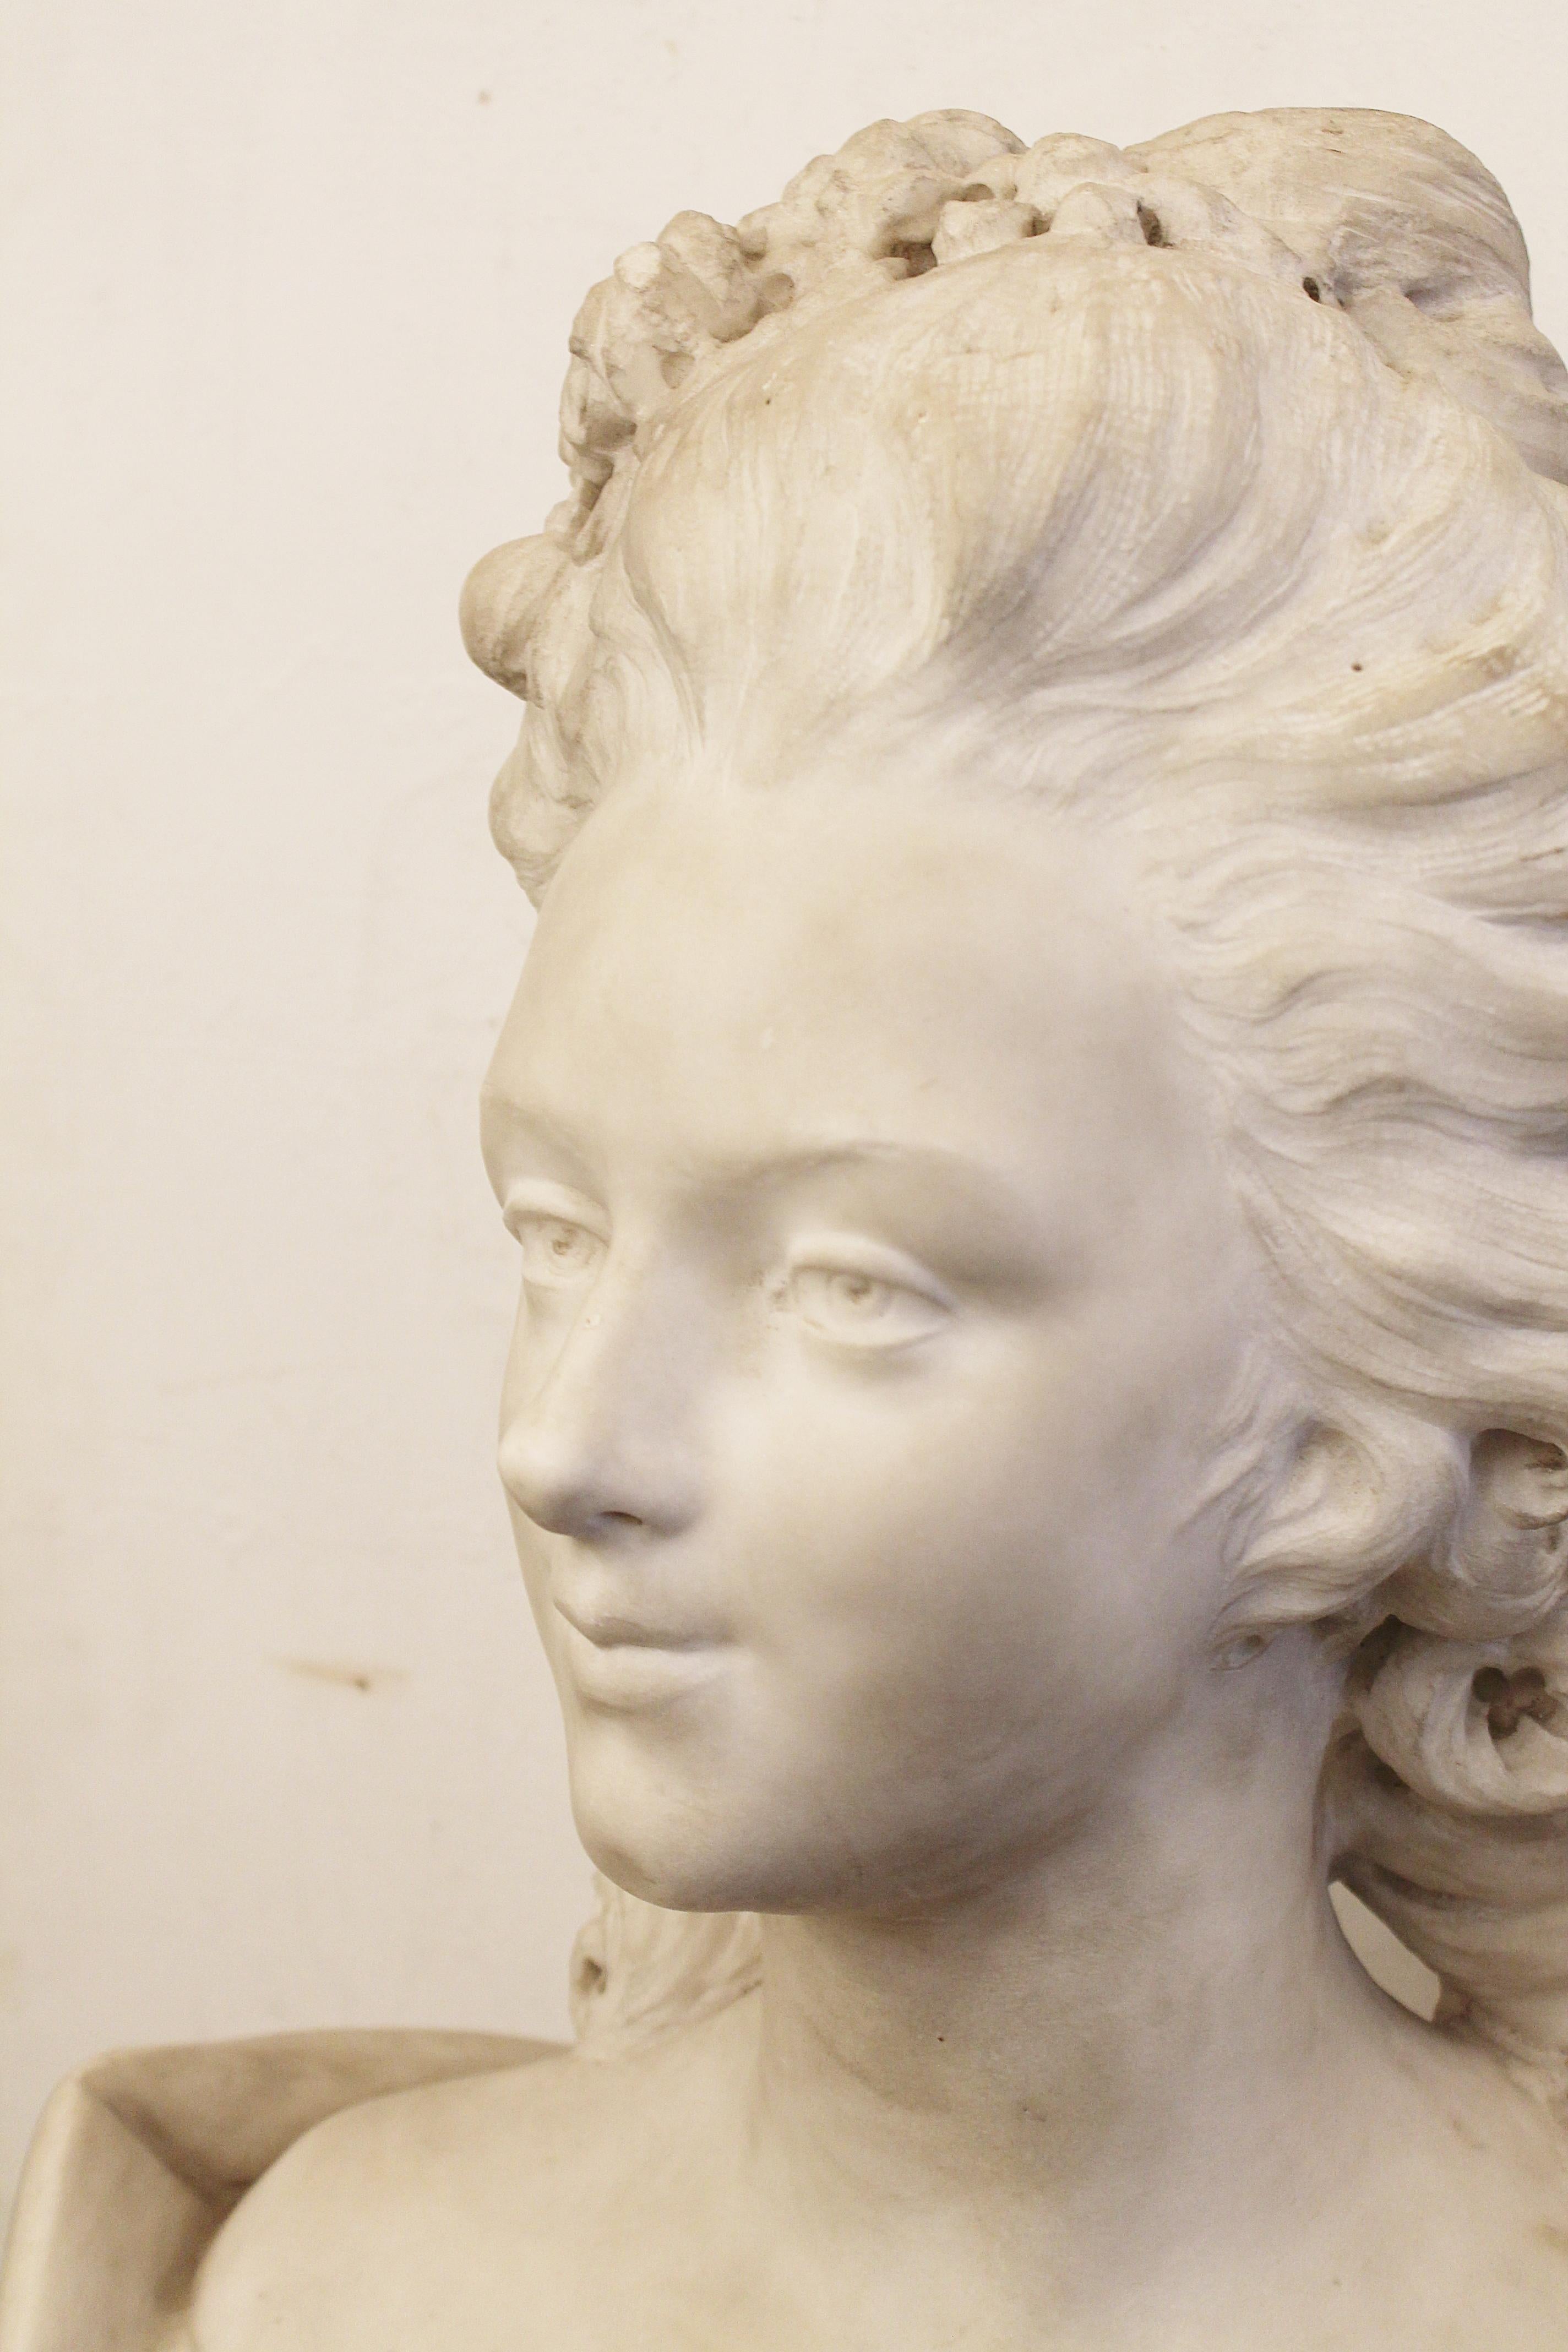 Carrara marble bust, France, early 19th century.